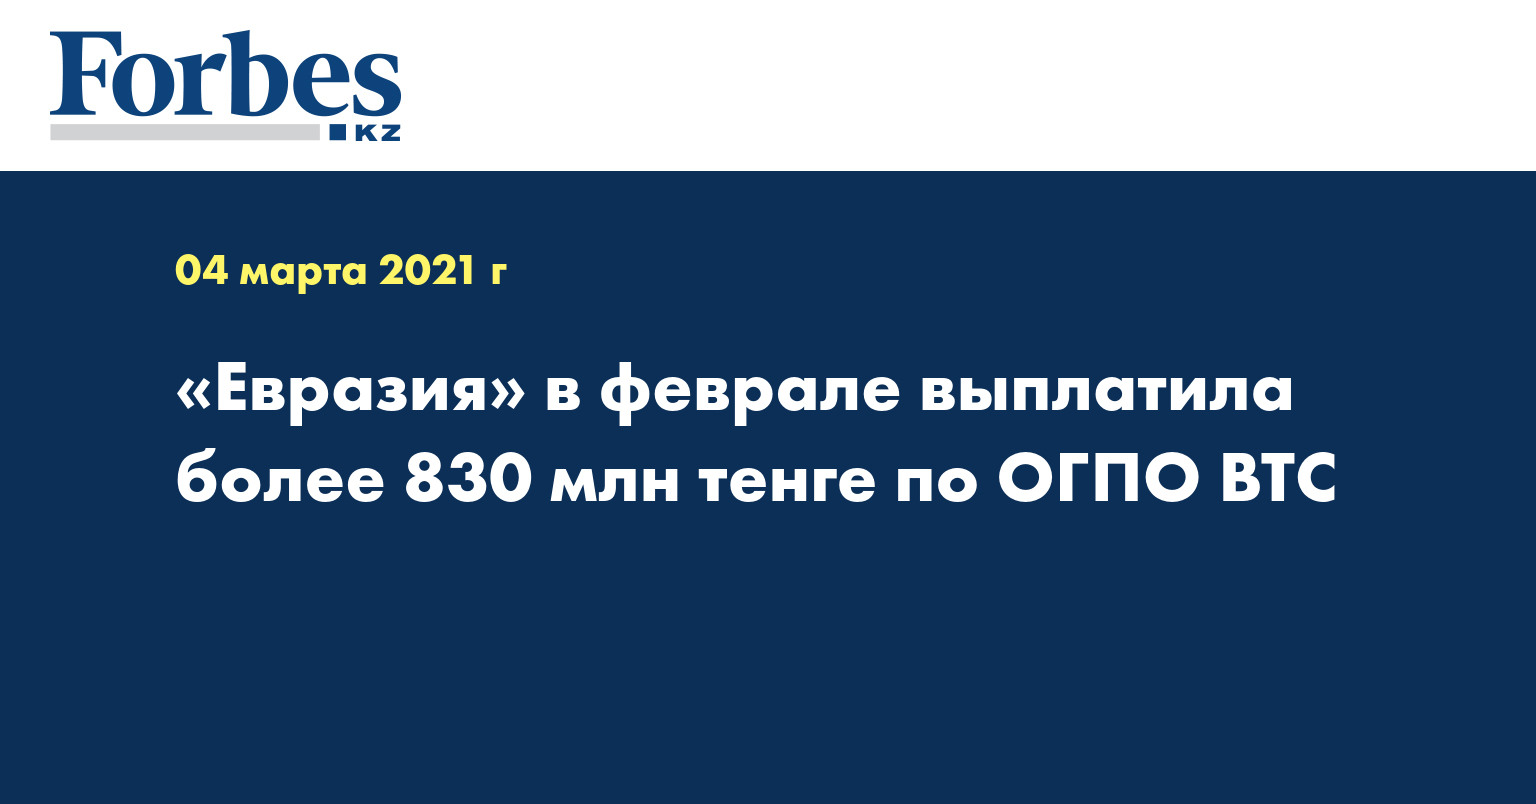 «Евразия» в феврале выплатила более 830 млн тенге по ОГПО ВТС